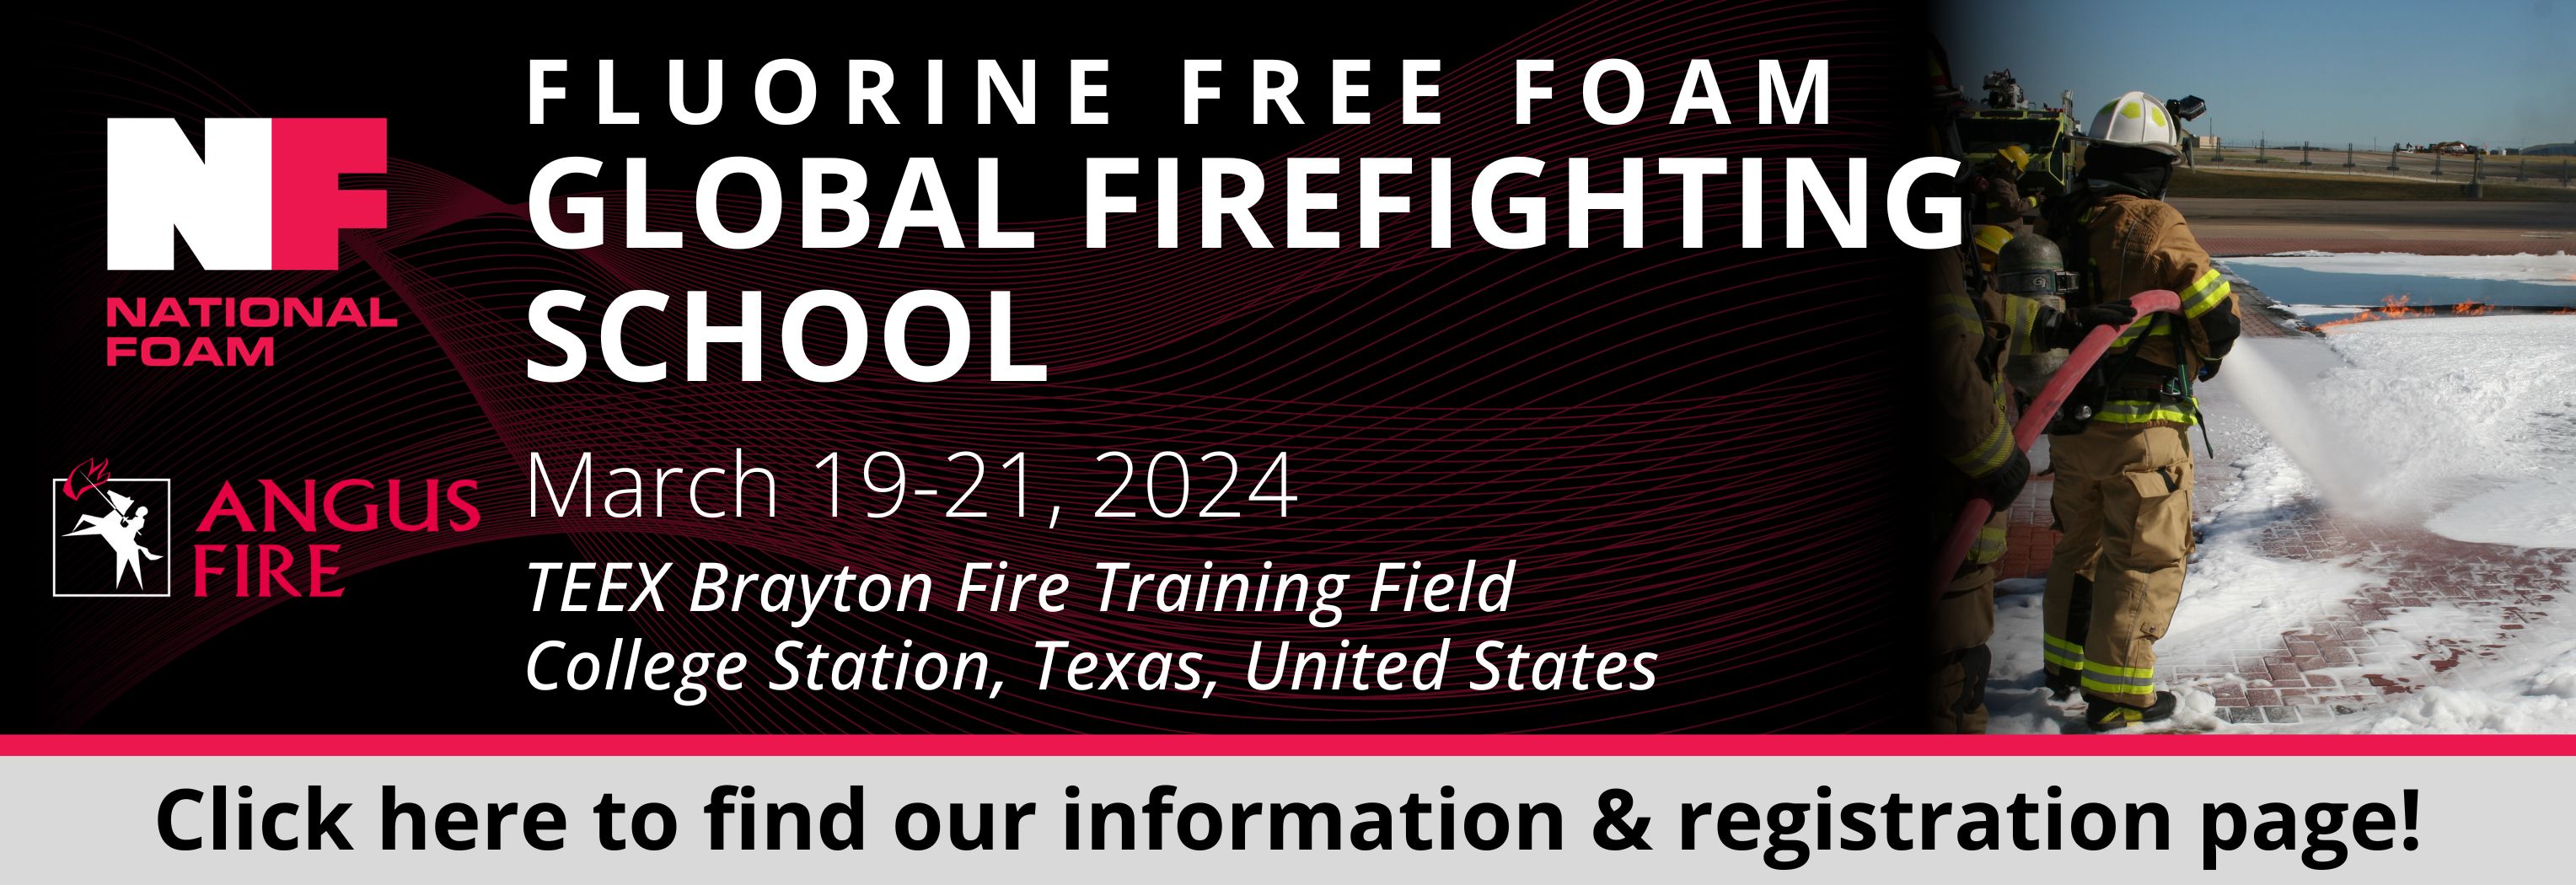 National Foam Fluorine Free Foam Global Firefighting School Web Slider Image